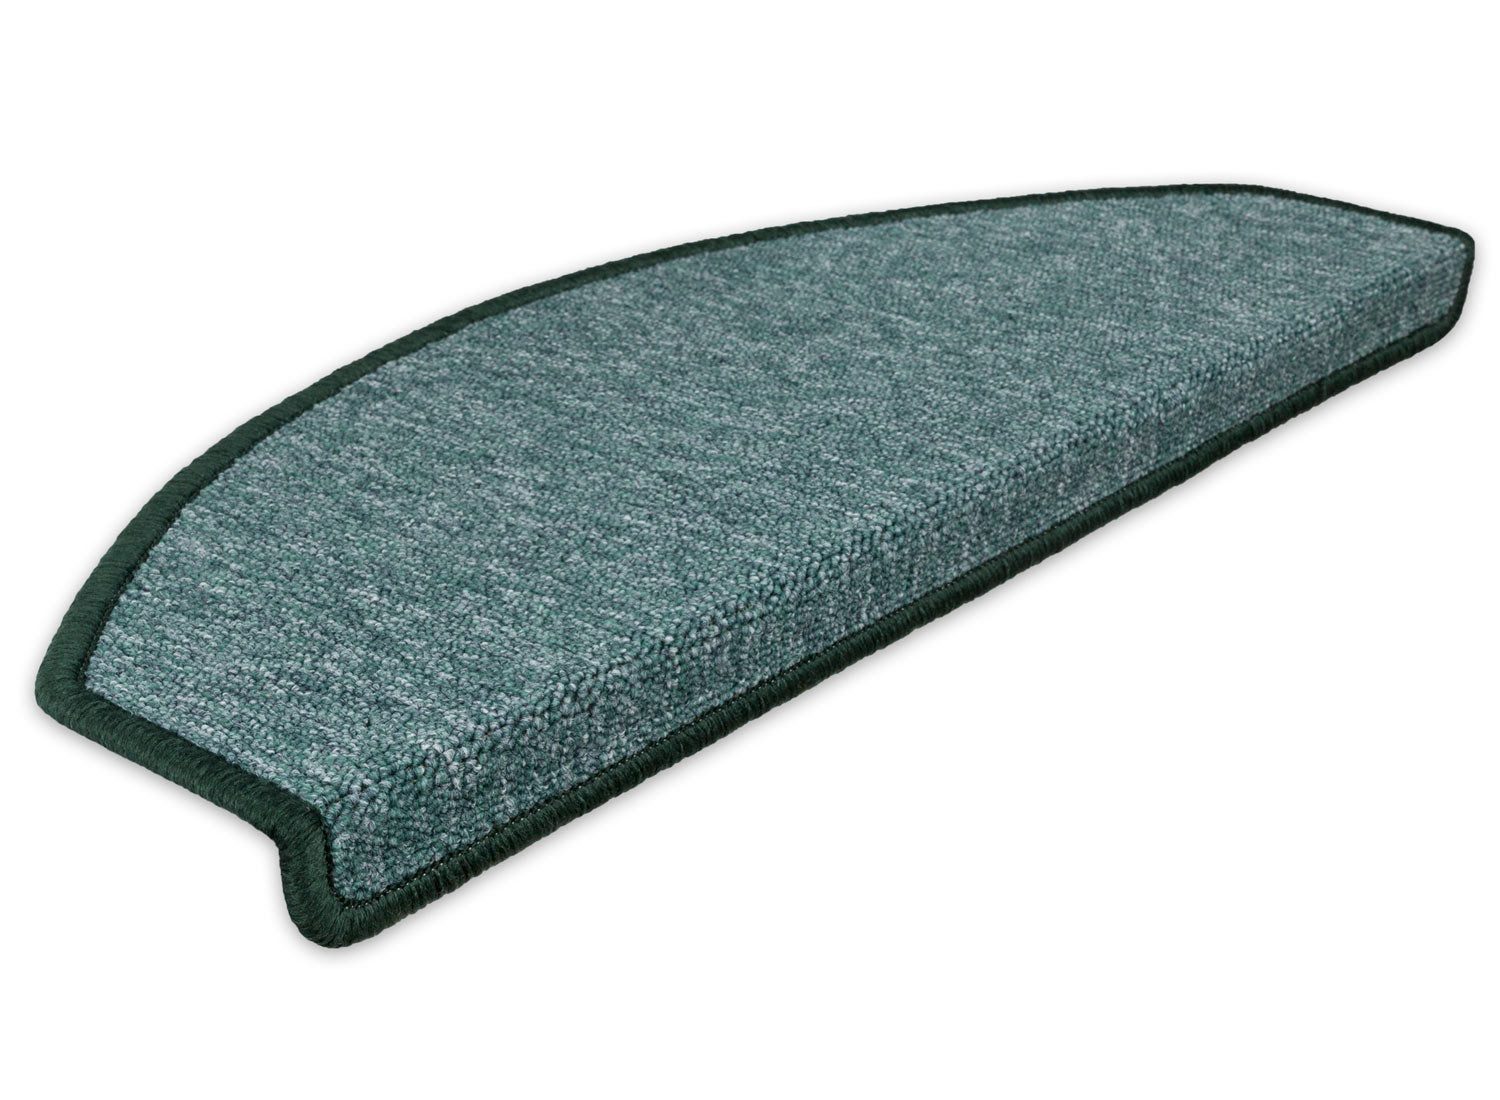 Stufenmatte Stufenmatten Rambo New Halbrund SparSet - Grün 15 Stück, Metzker®, halbrund, Höhe: 5 mm, 15 Stück im Set - Grün